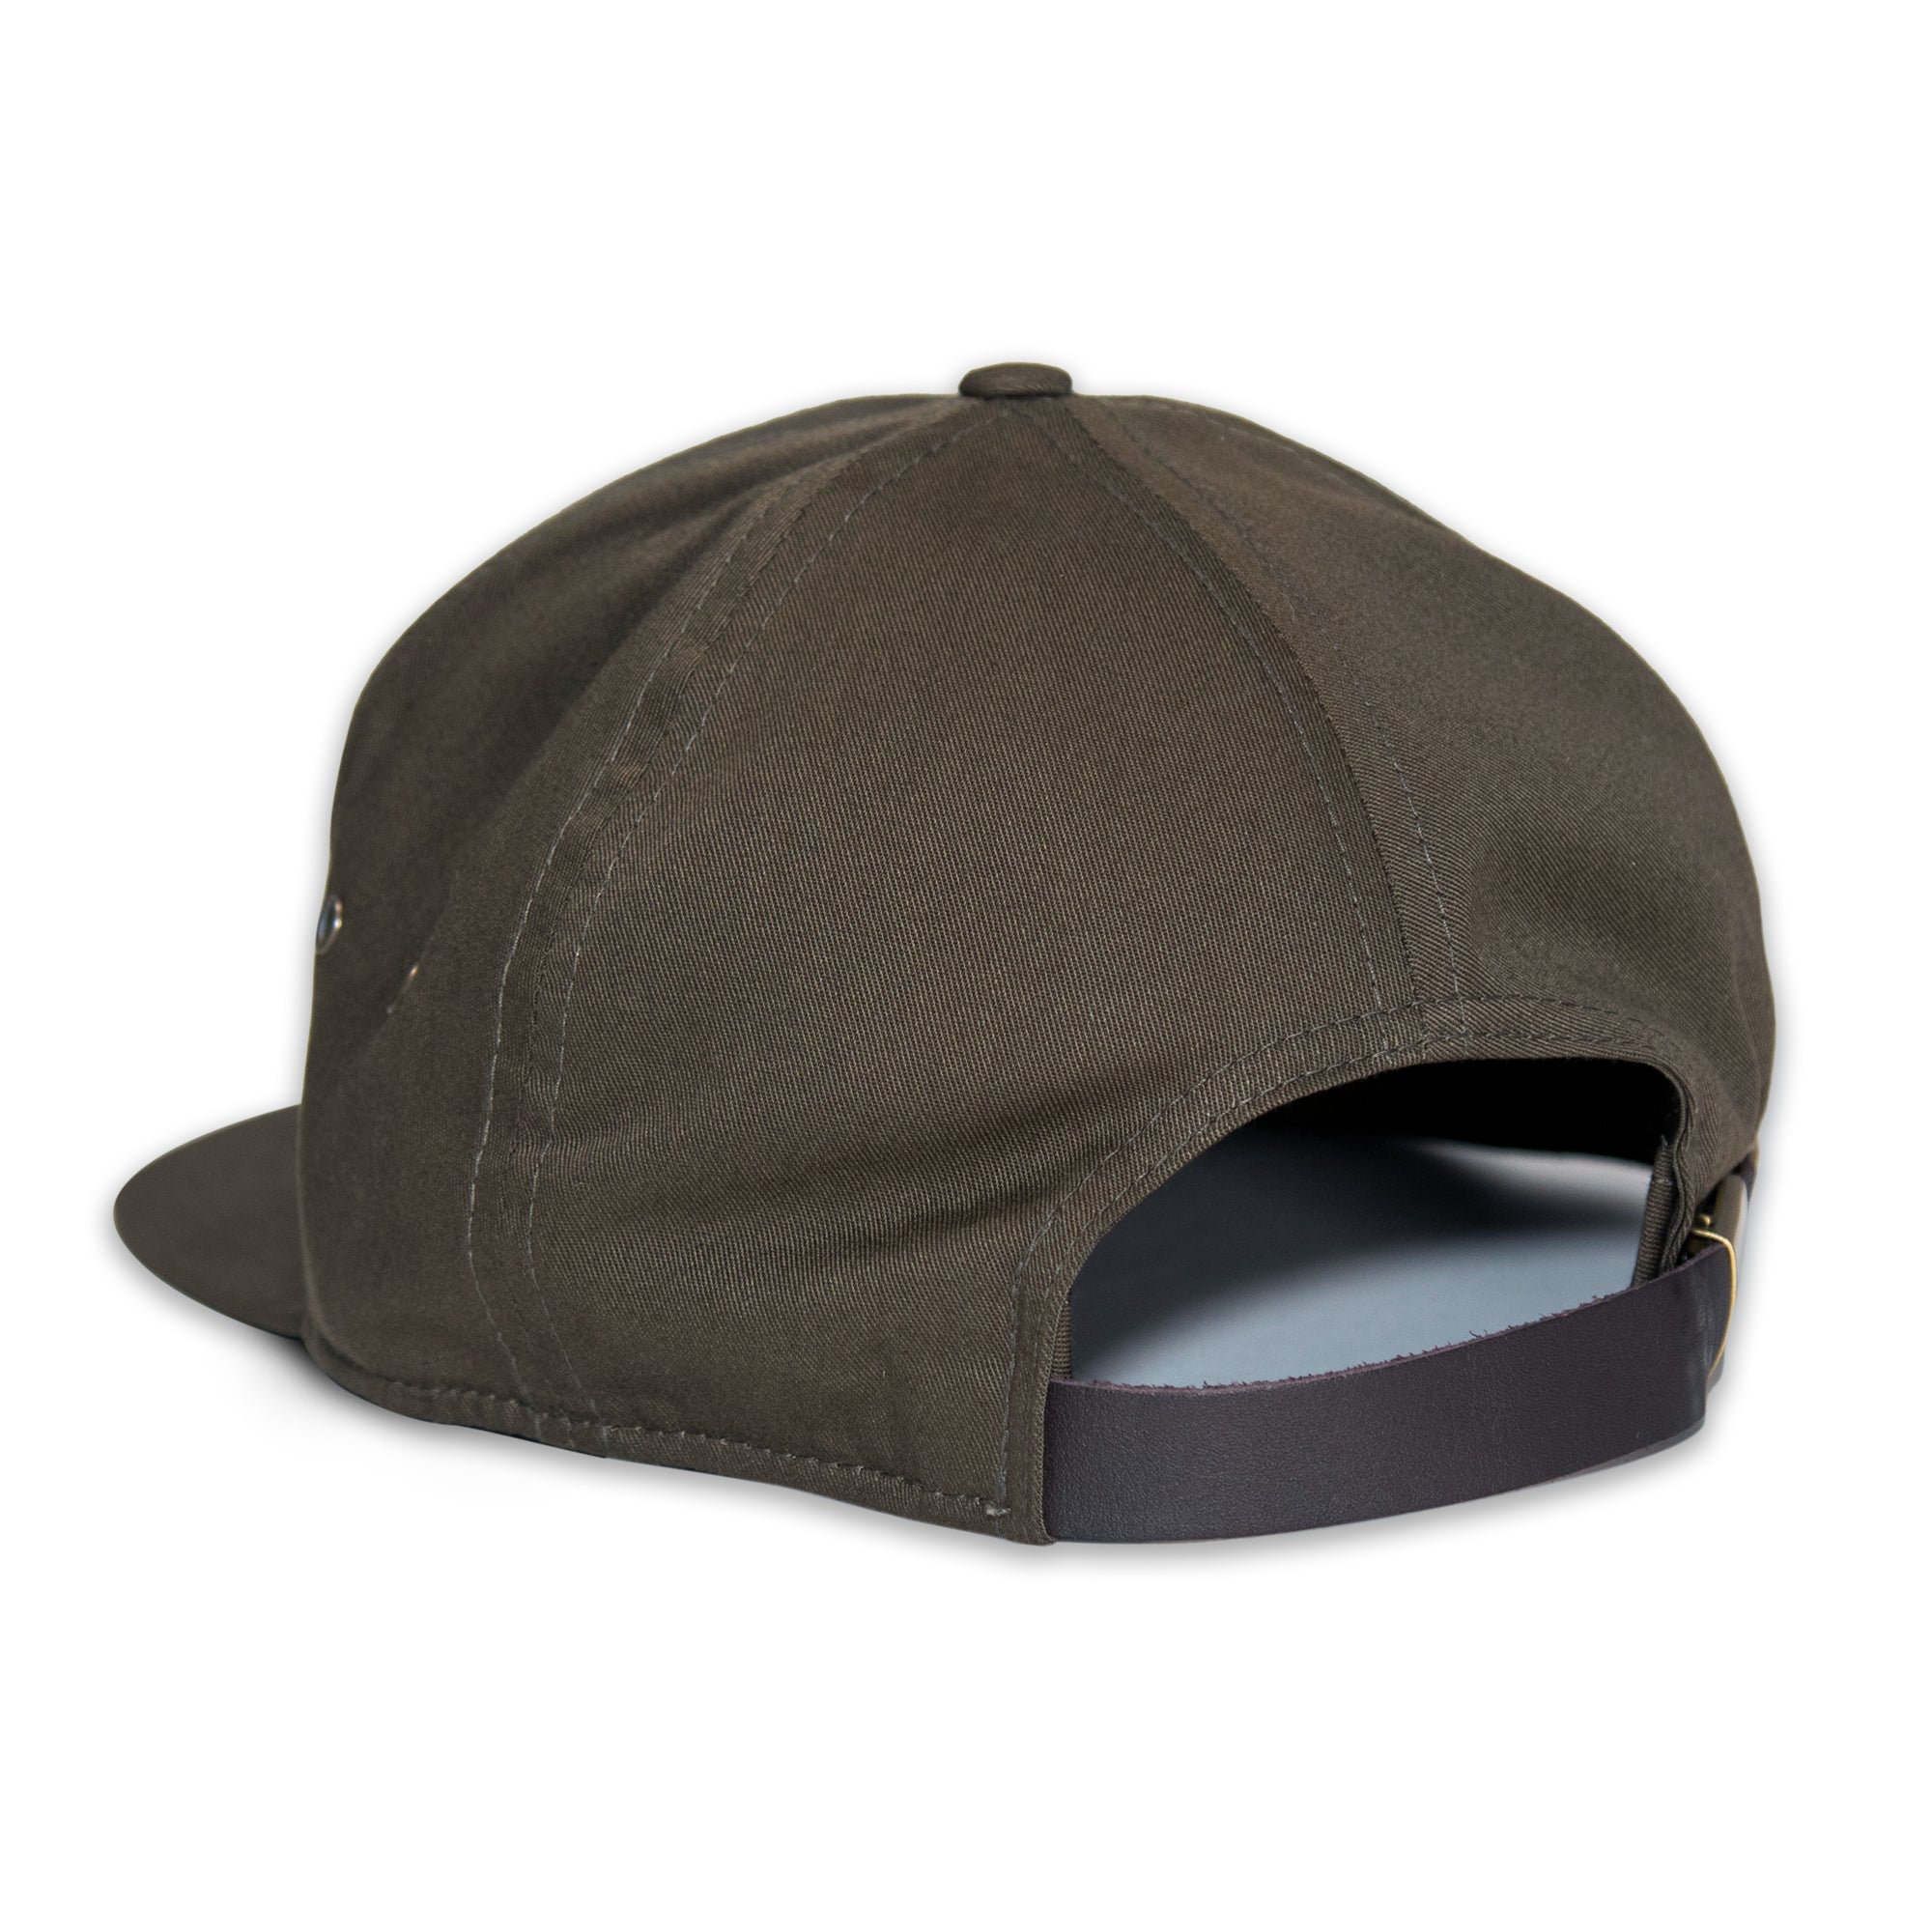 Ranger 7-Panel Hat